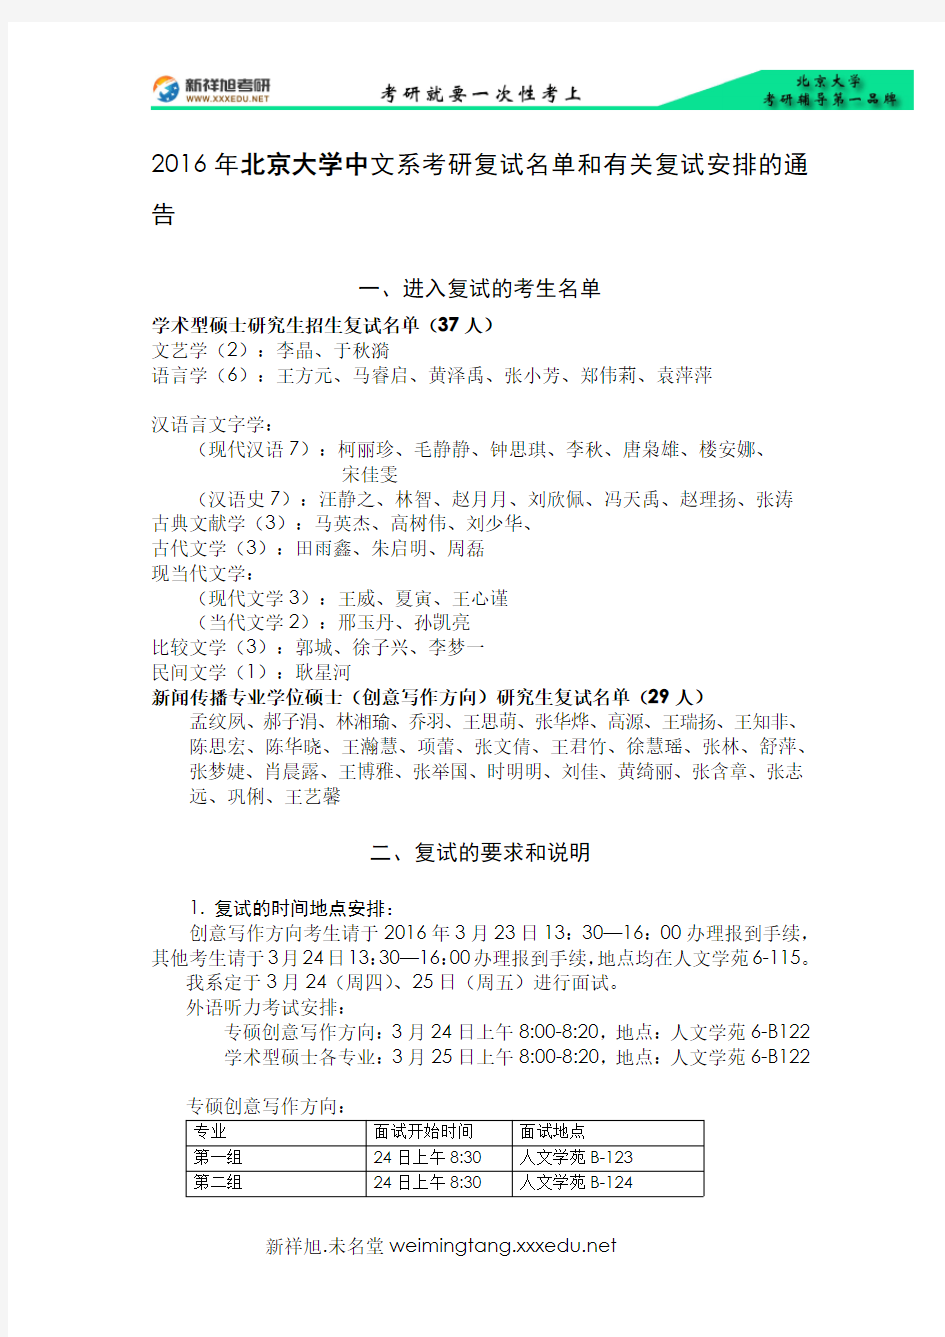 2016年北京大学中文系考研复试名单和有关复试安排的通告